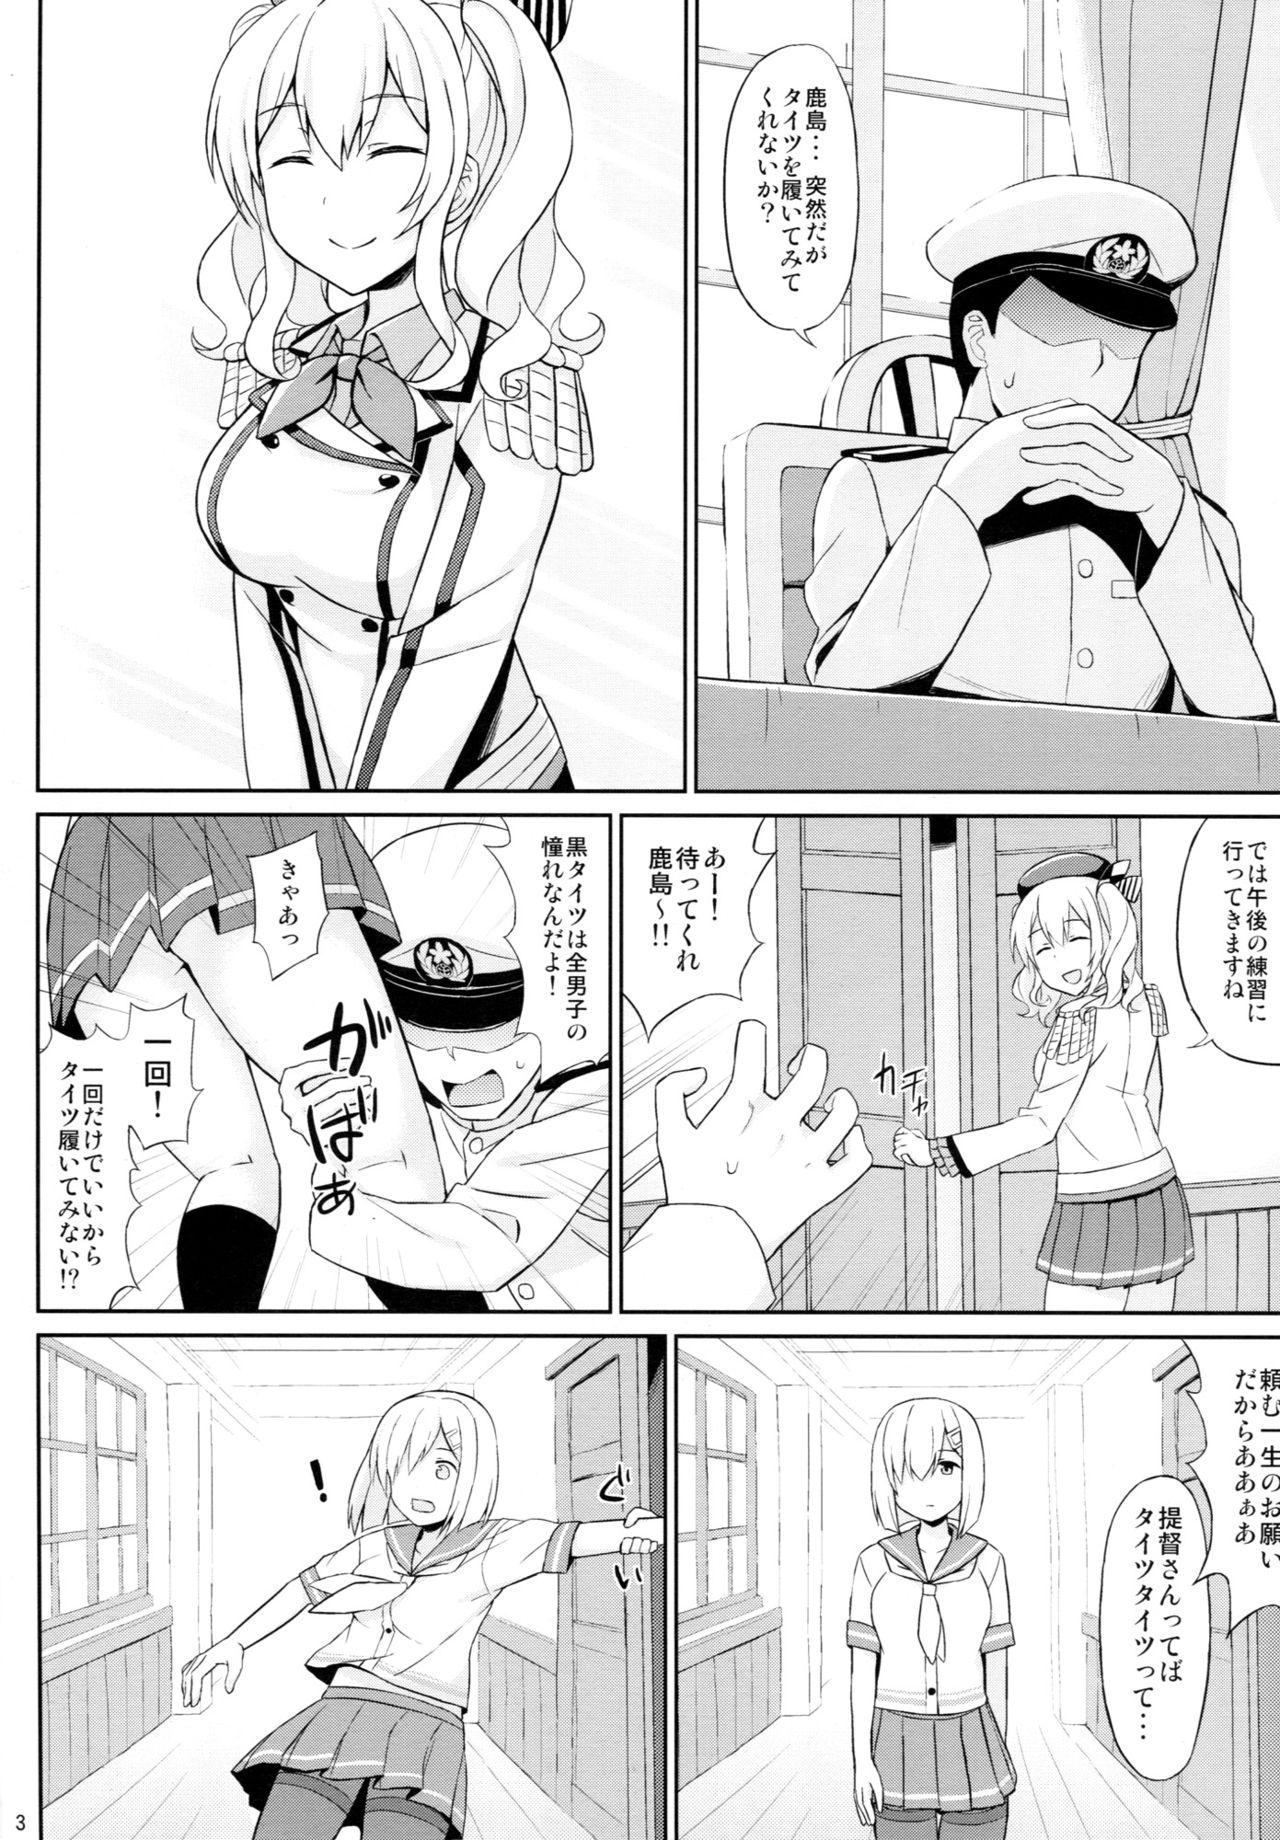 Screaming Teitoku-san, Tights Soubi wa Shiyou desu! - Kantai collection Vecina - Page 2